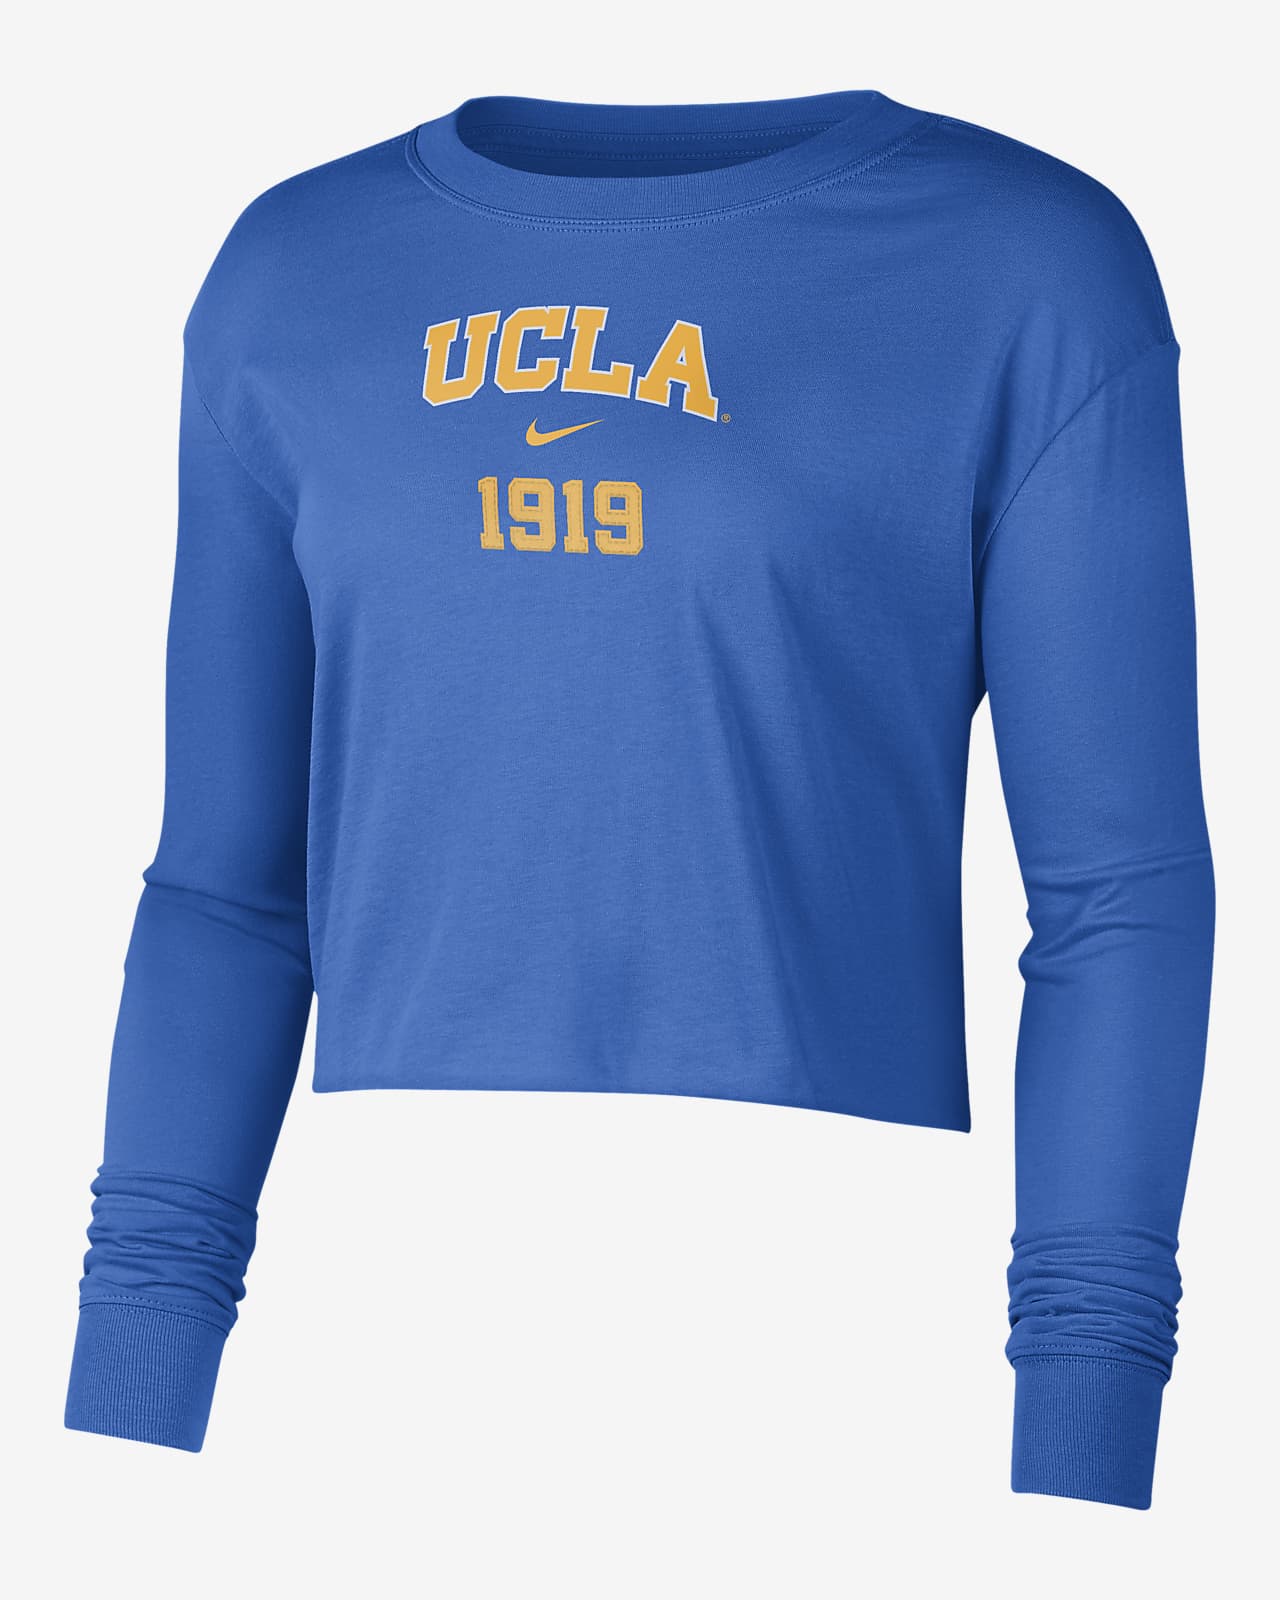 NCAA UCLA Bruins Girls' Long Sleeve T-Shirt - XS